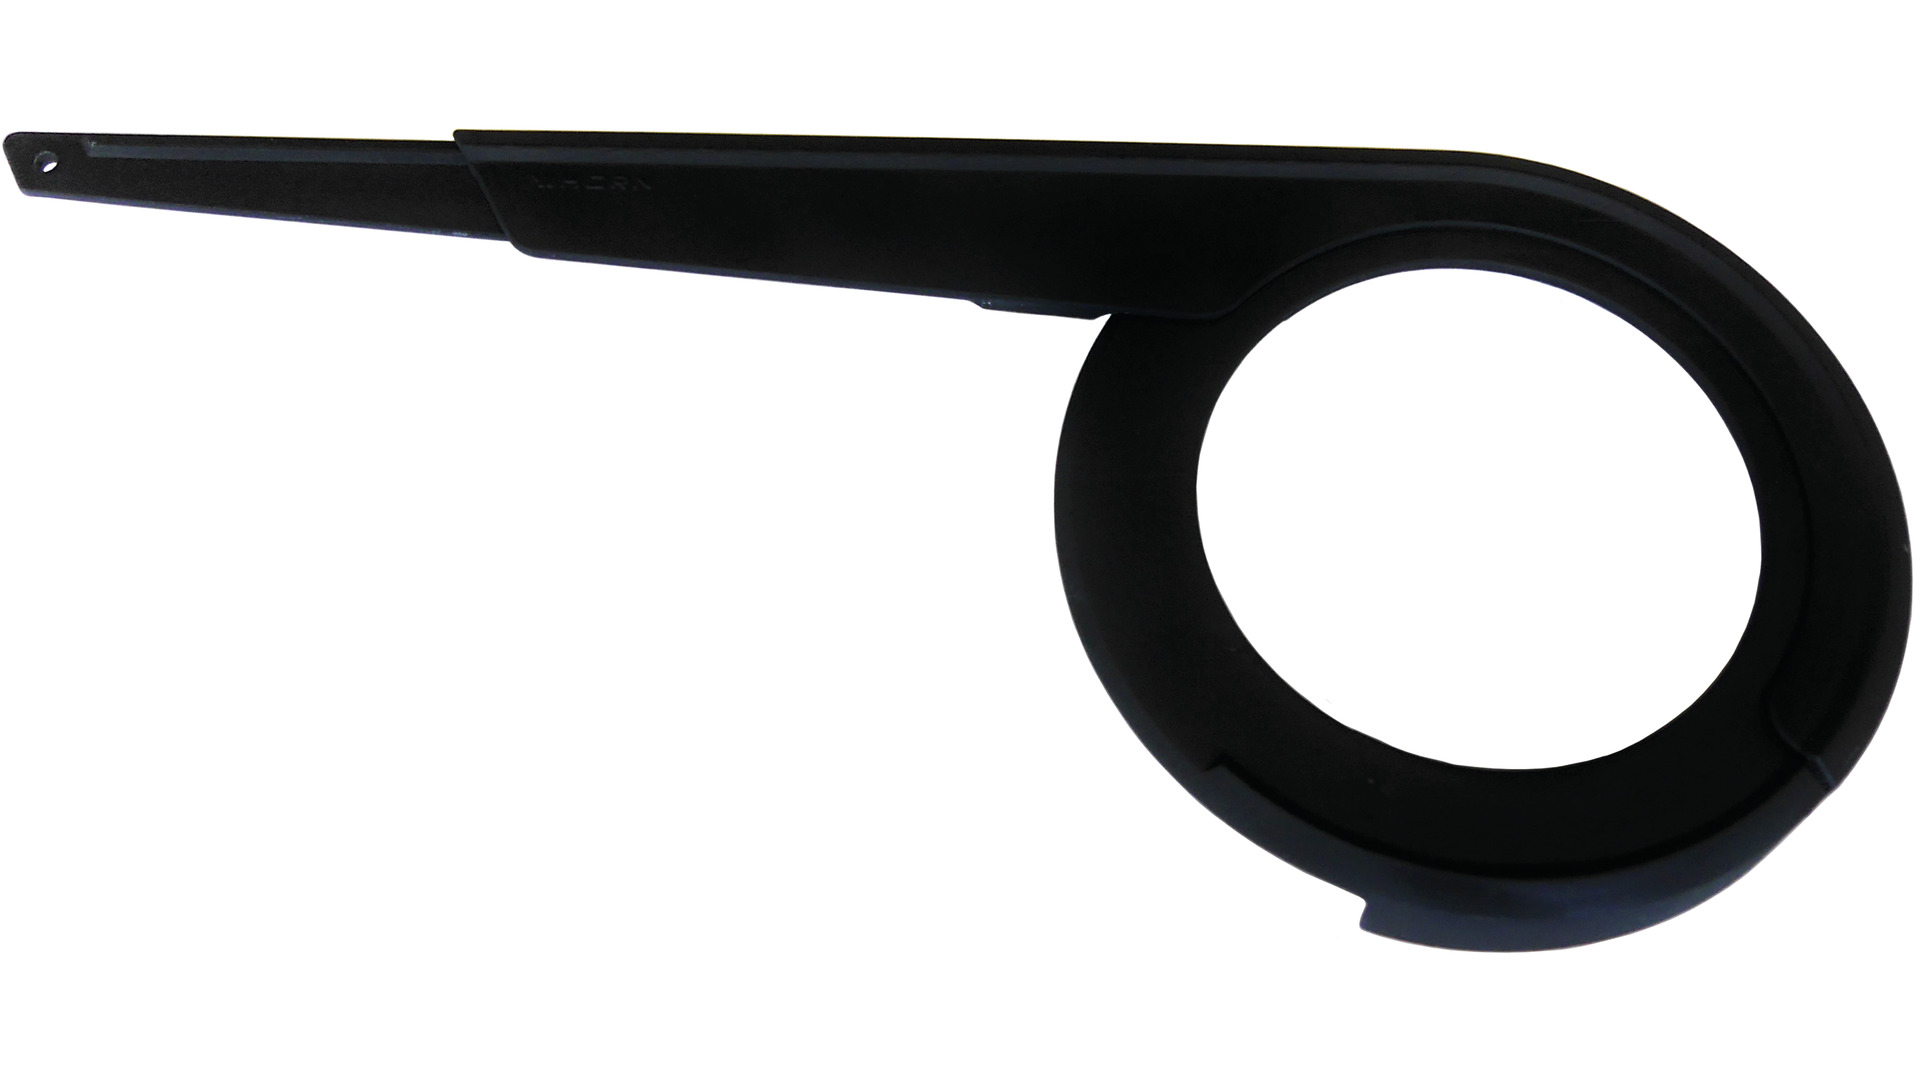 Horn Kettenschützer Catena 18, schwarz matt / glänzend - Bild 1